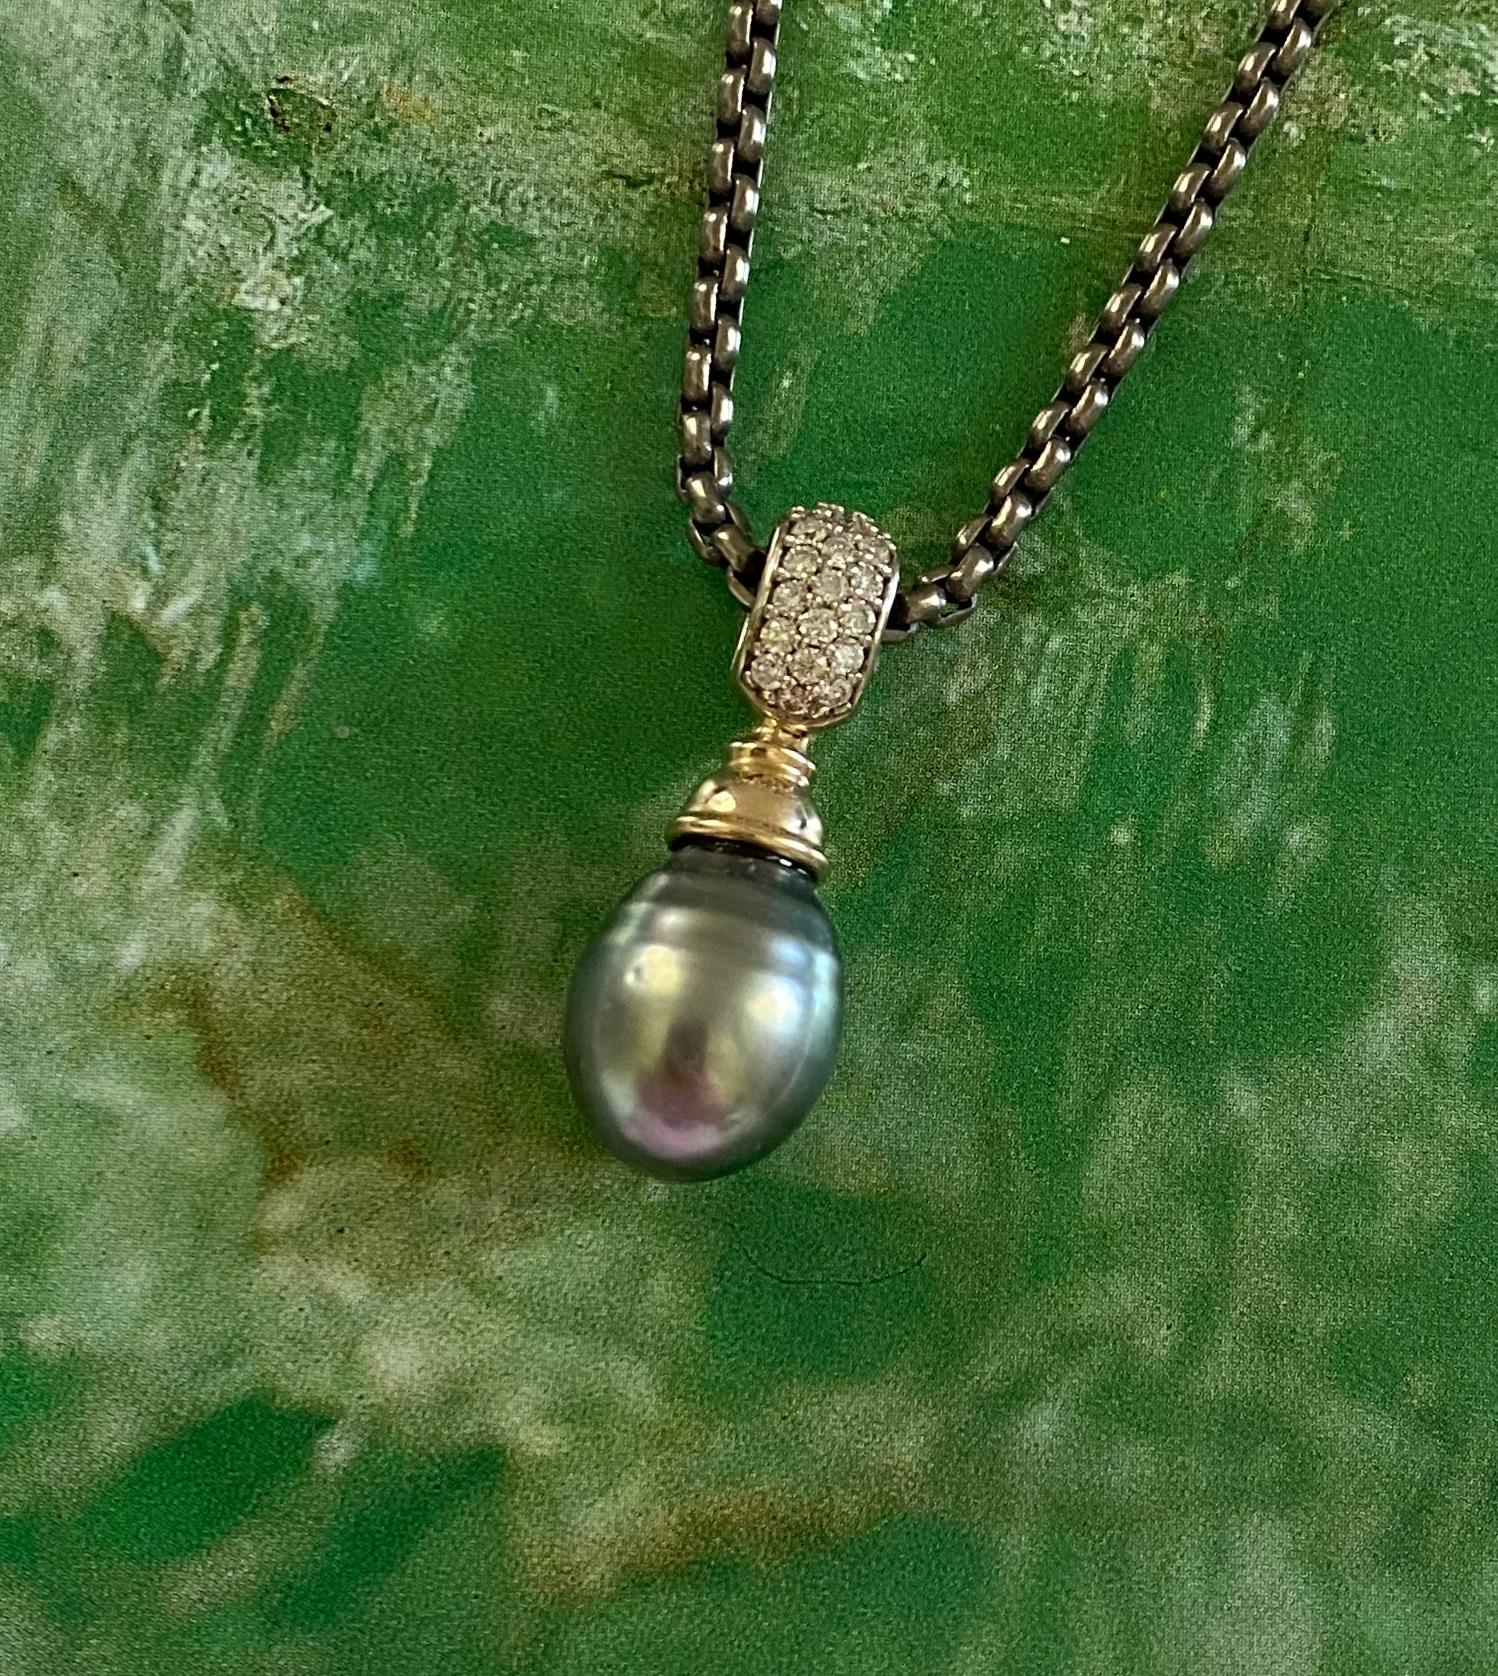 La perle de Tahiti est mise en valeur dans cet élégant pendentif en forme de goutte.  La perle est d'une belle couleur gris moyen avec des nuances de vert et de bleu.  La gemme présente quelques petites fossettes mais possède un riche lustre qui en